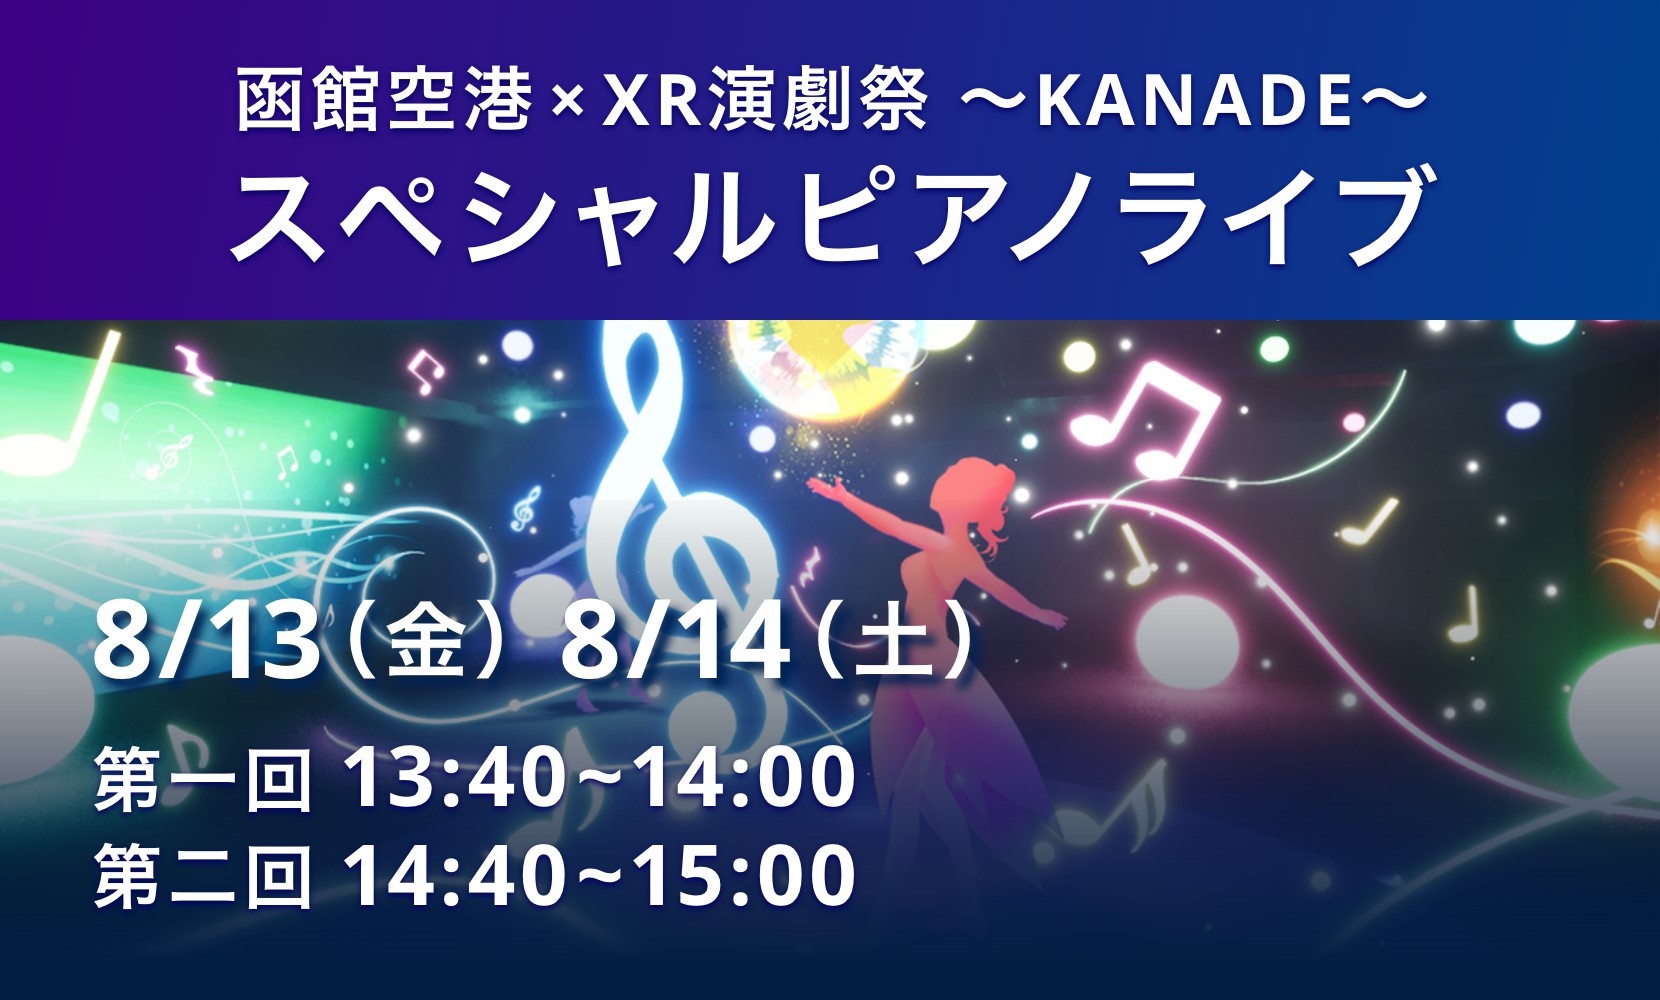 「函館空港×XR演劇祭〜KANADE〜スペシャルピアノライブ」開催のお知らせ（終了致しました）